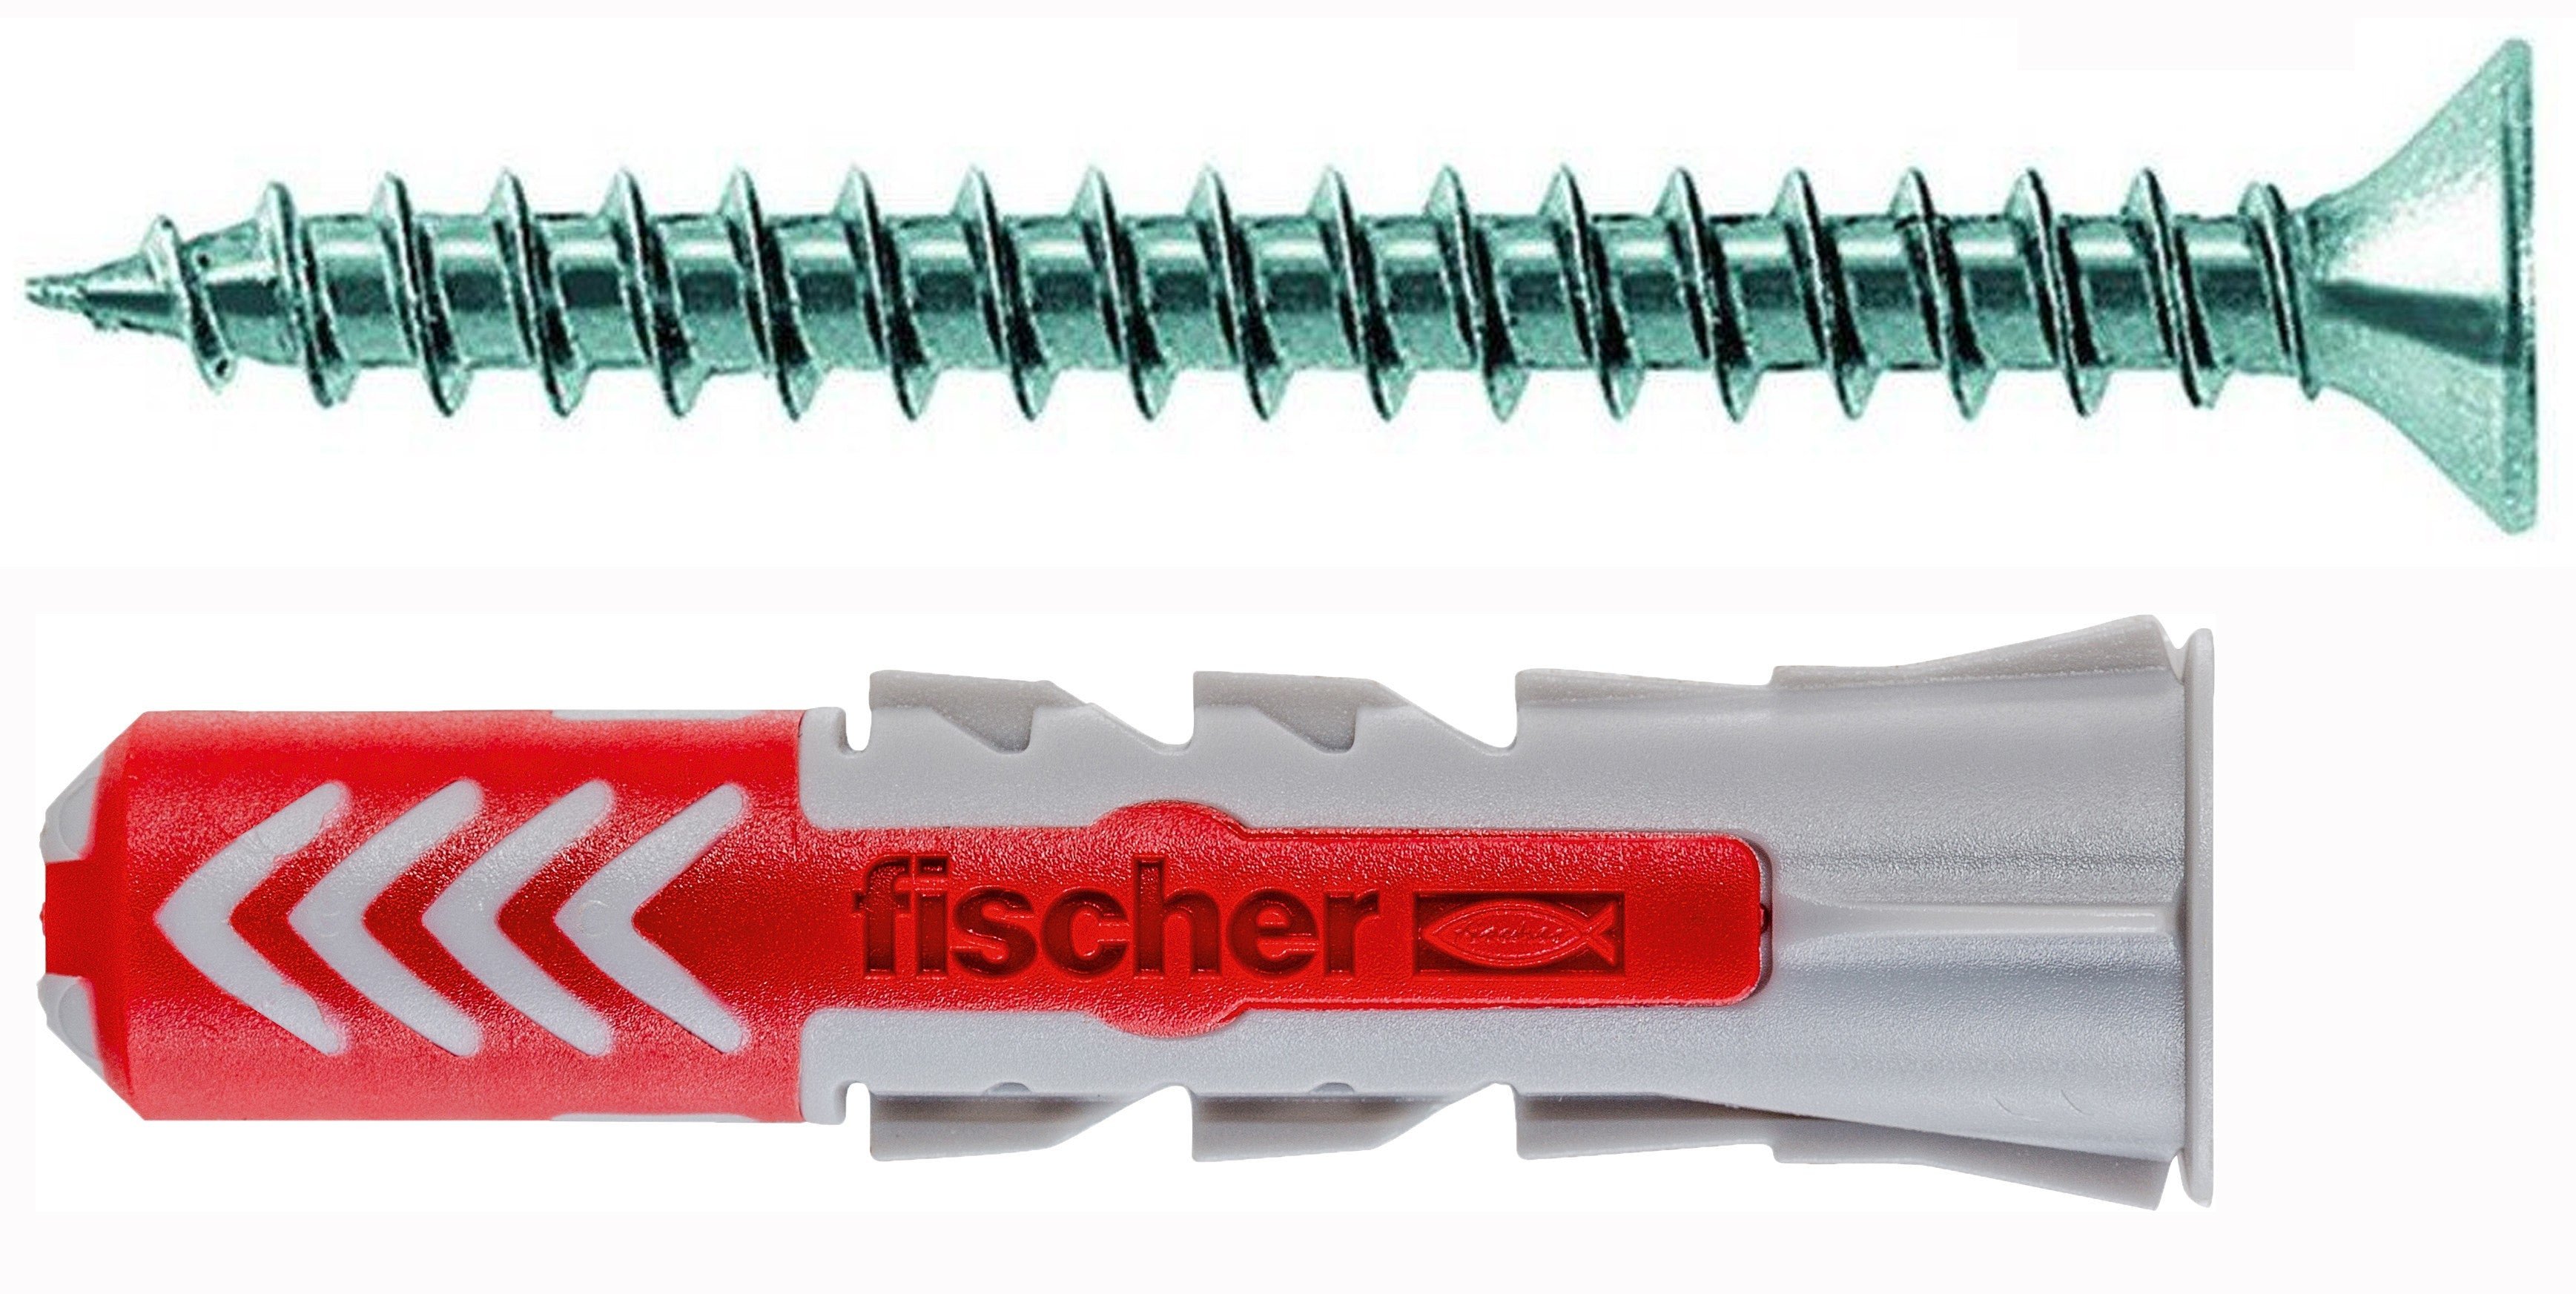 Tasselli Fischer DUOPOWER S 6 8 10mm